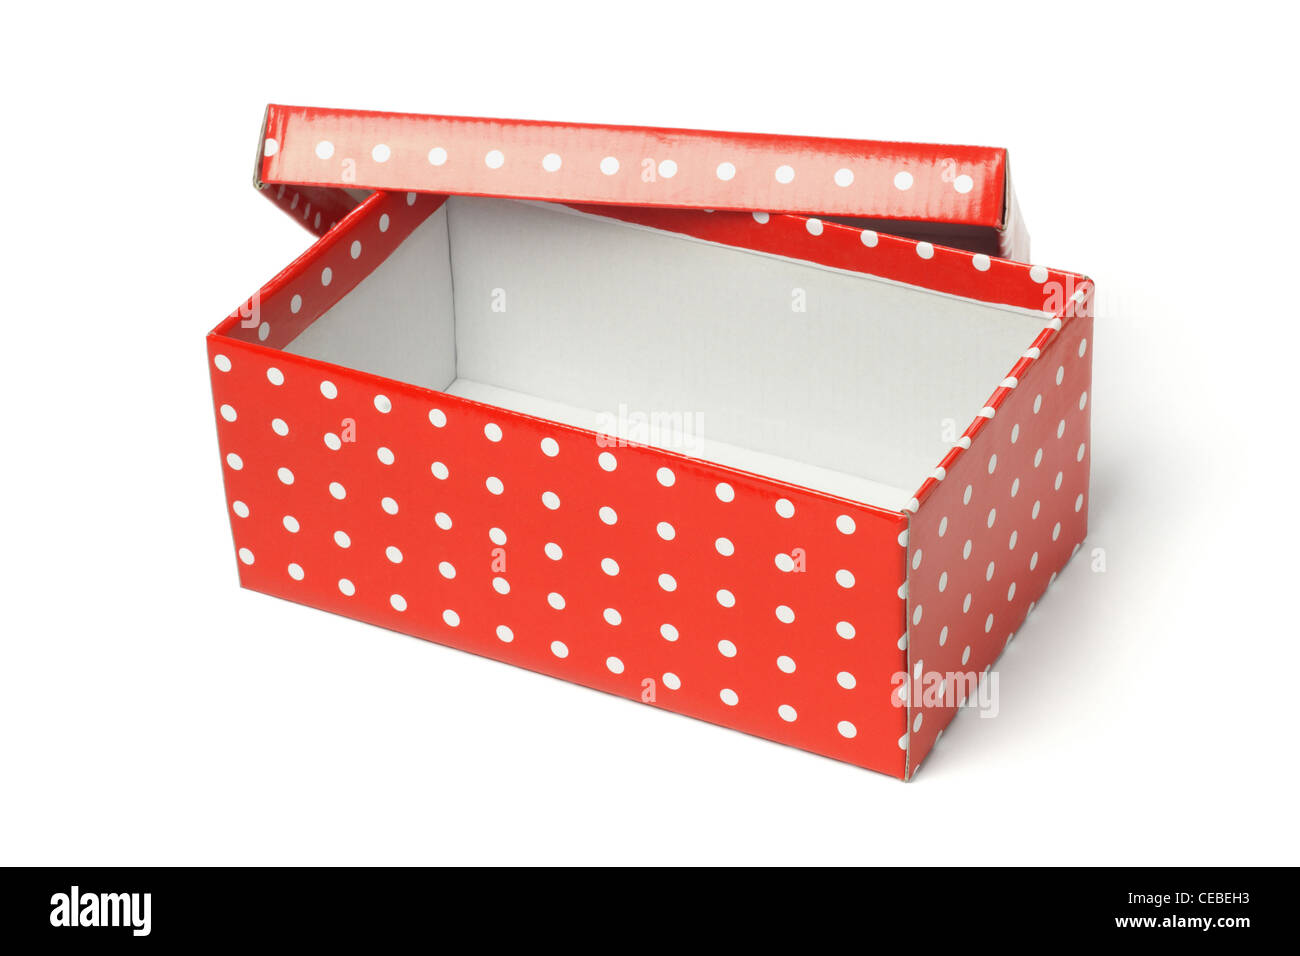 Aprire vuoto confezione regalo rossa su sfondo bianco Foto Stock